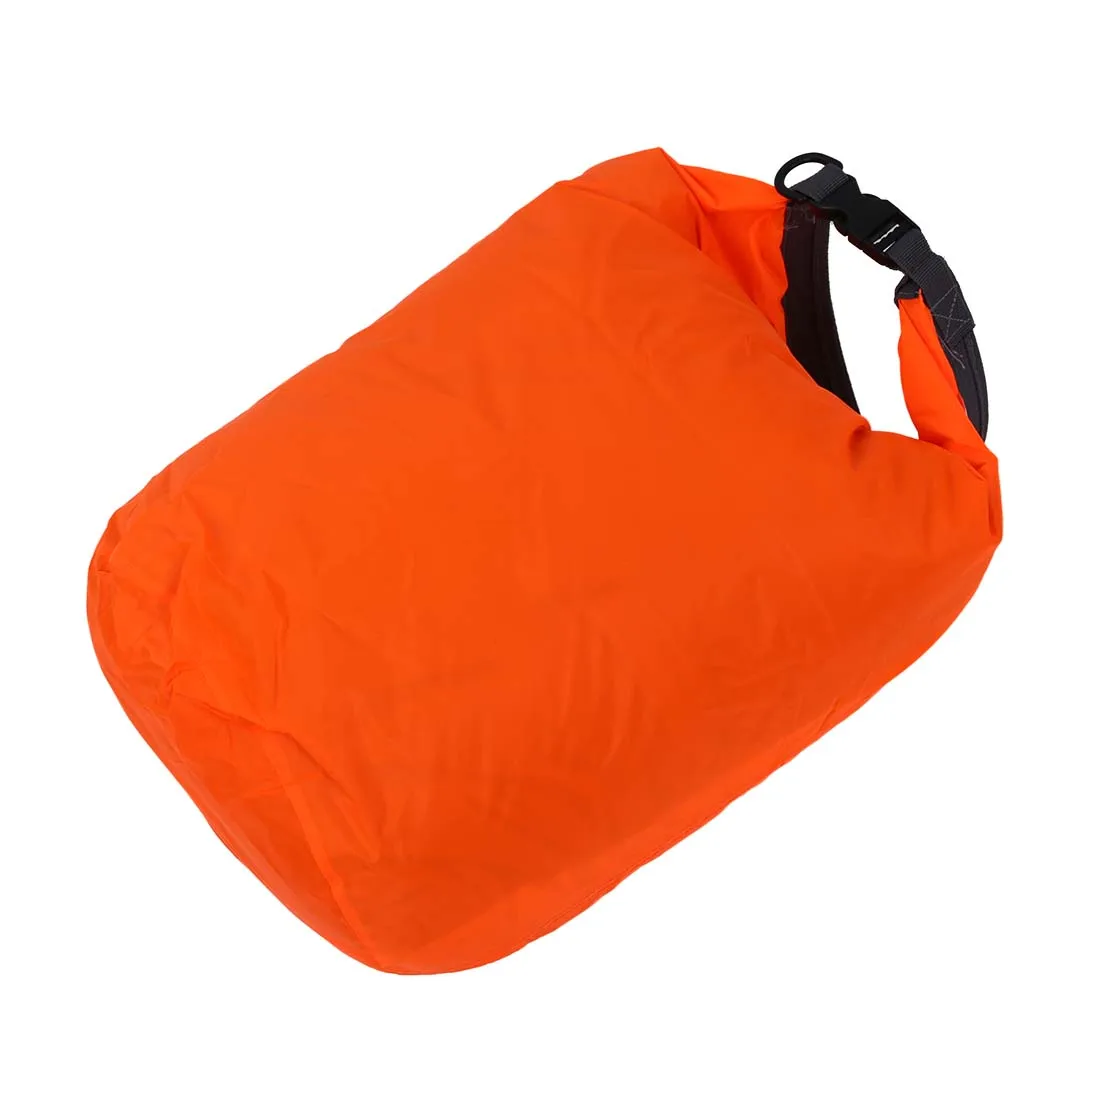 MUMIAN 2 x 20L Водонепроницаемый сухой мешок для кемпинга, дрифтинга, пеших прогулок и других видов активного отдыха.(оранжевый